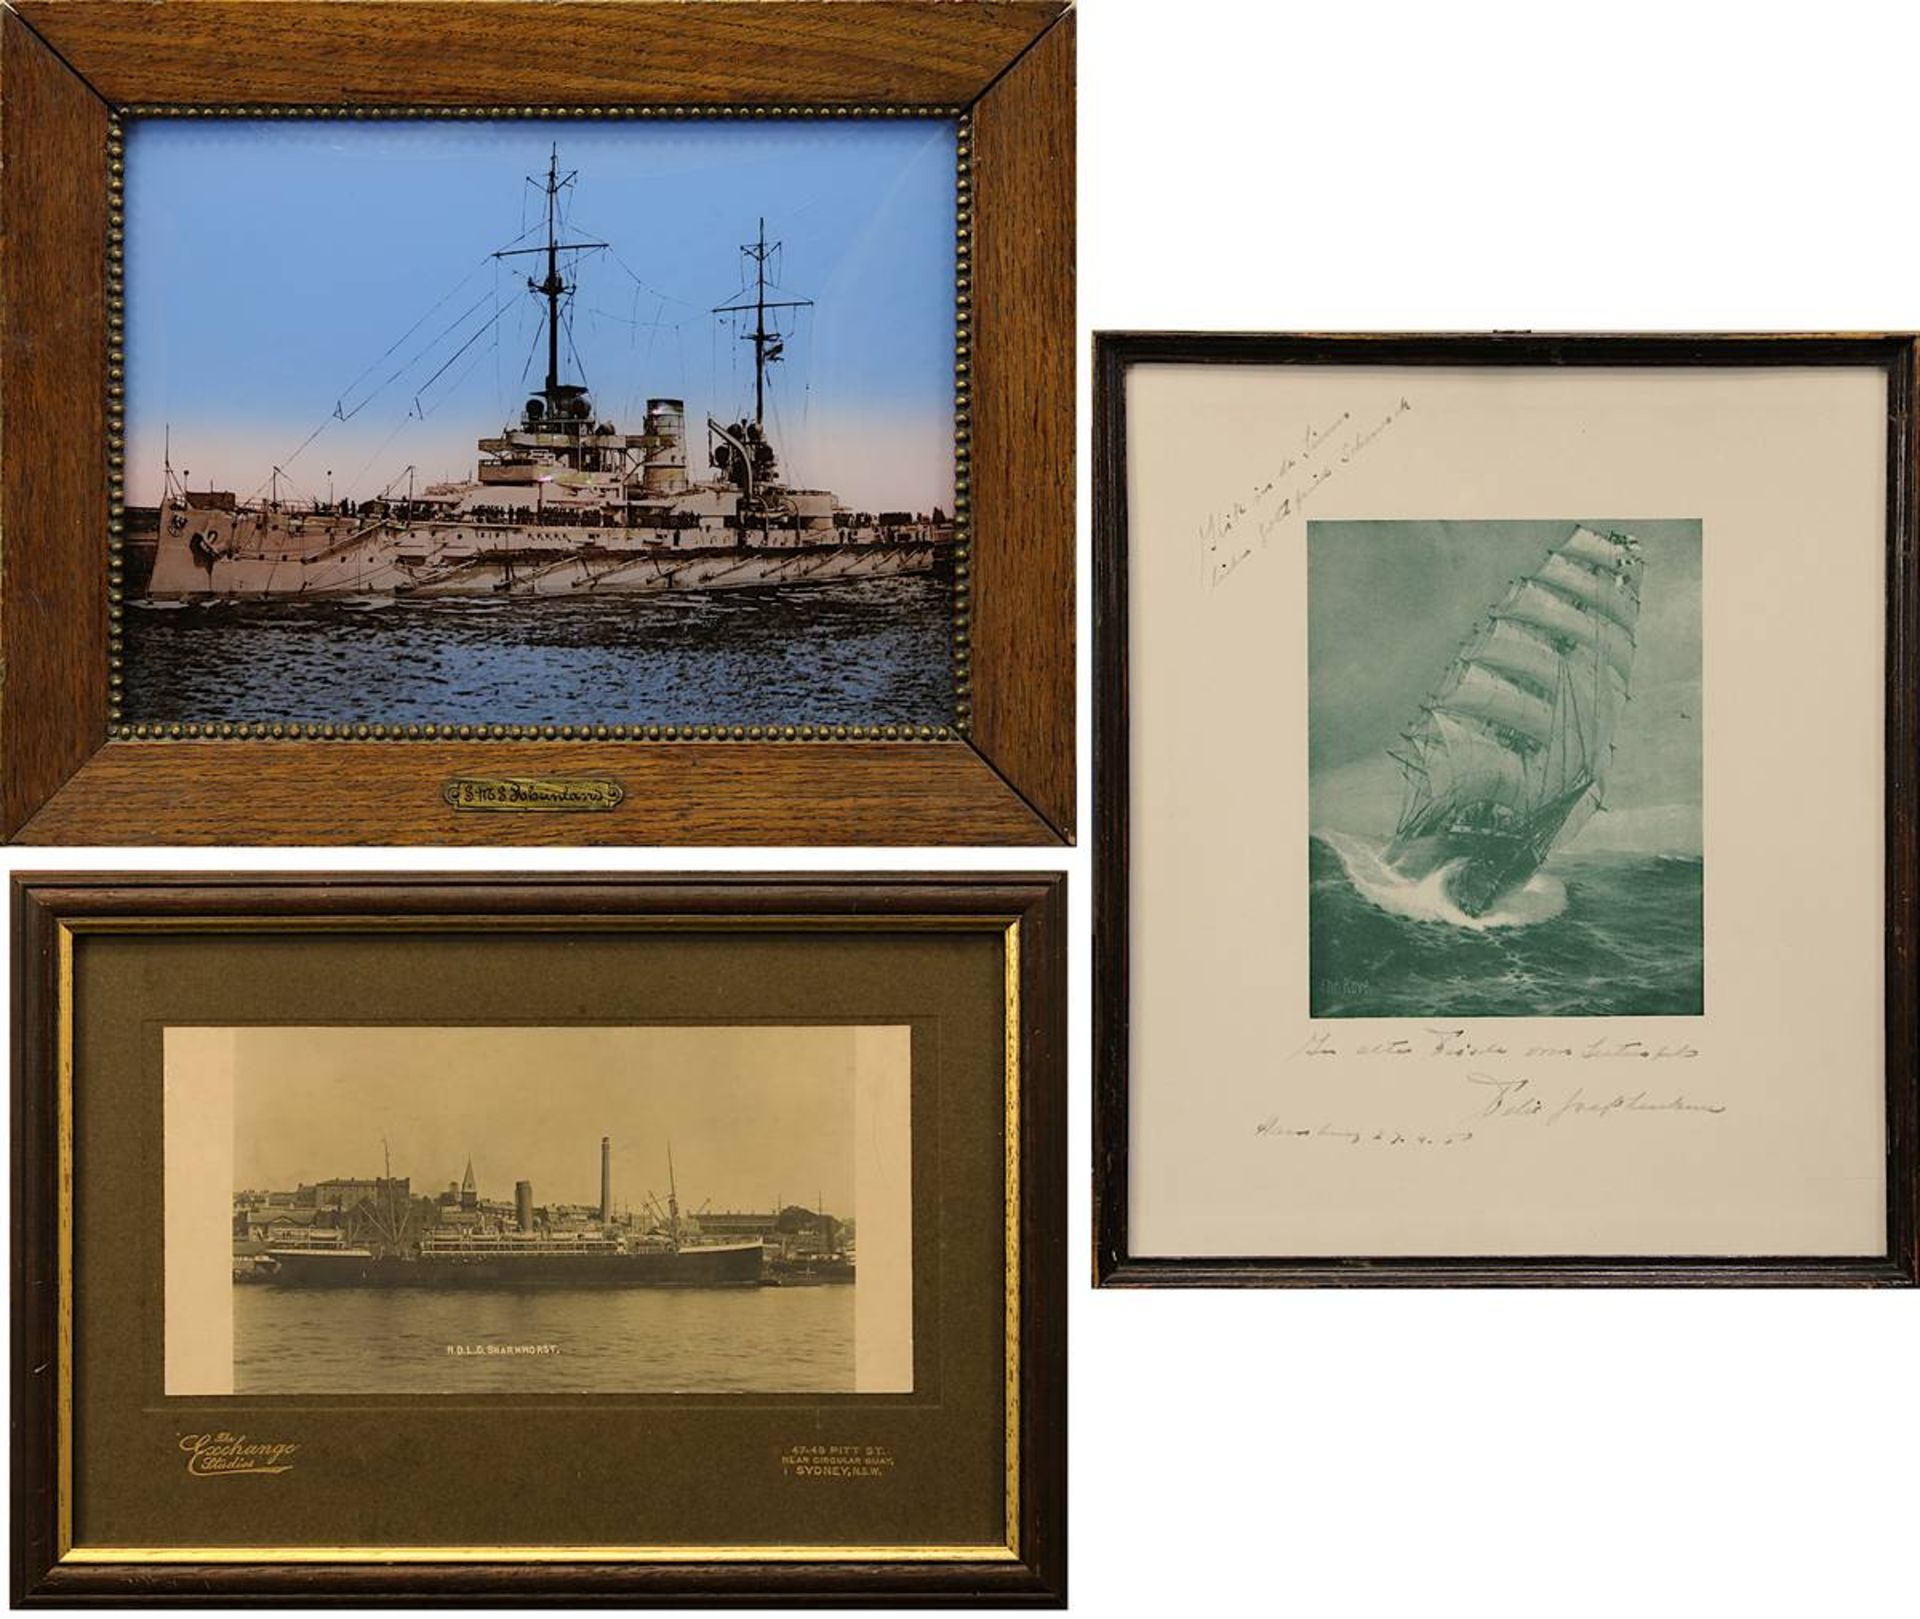 3 Abbildungen von Schiffen, Fotodruck des Dampfers N. D. L. S. Scharnhorst, Rahmen: 23 x 33 cm; Abb.